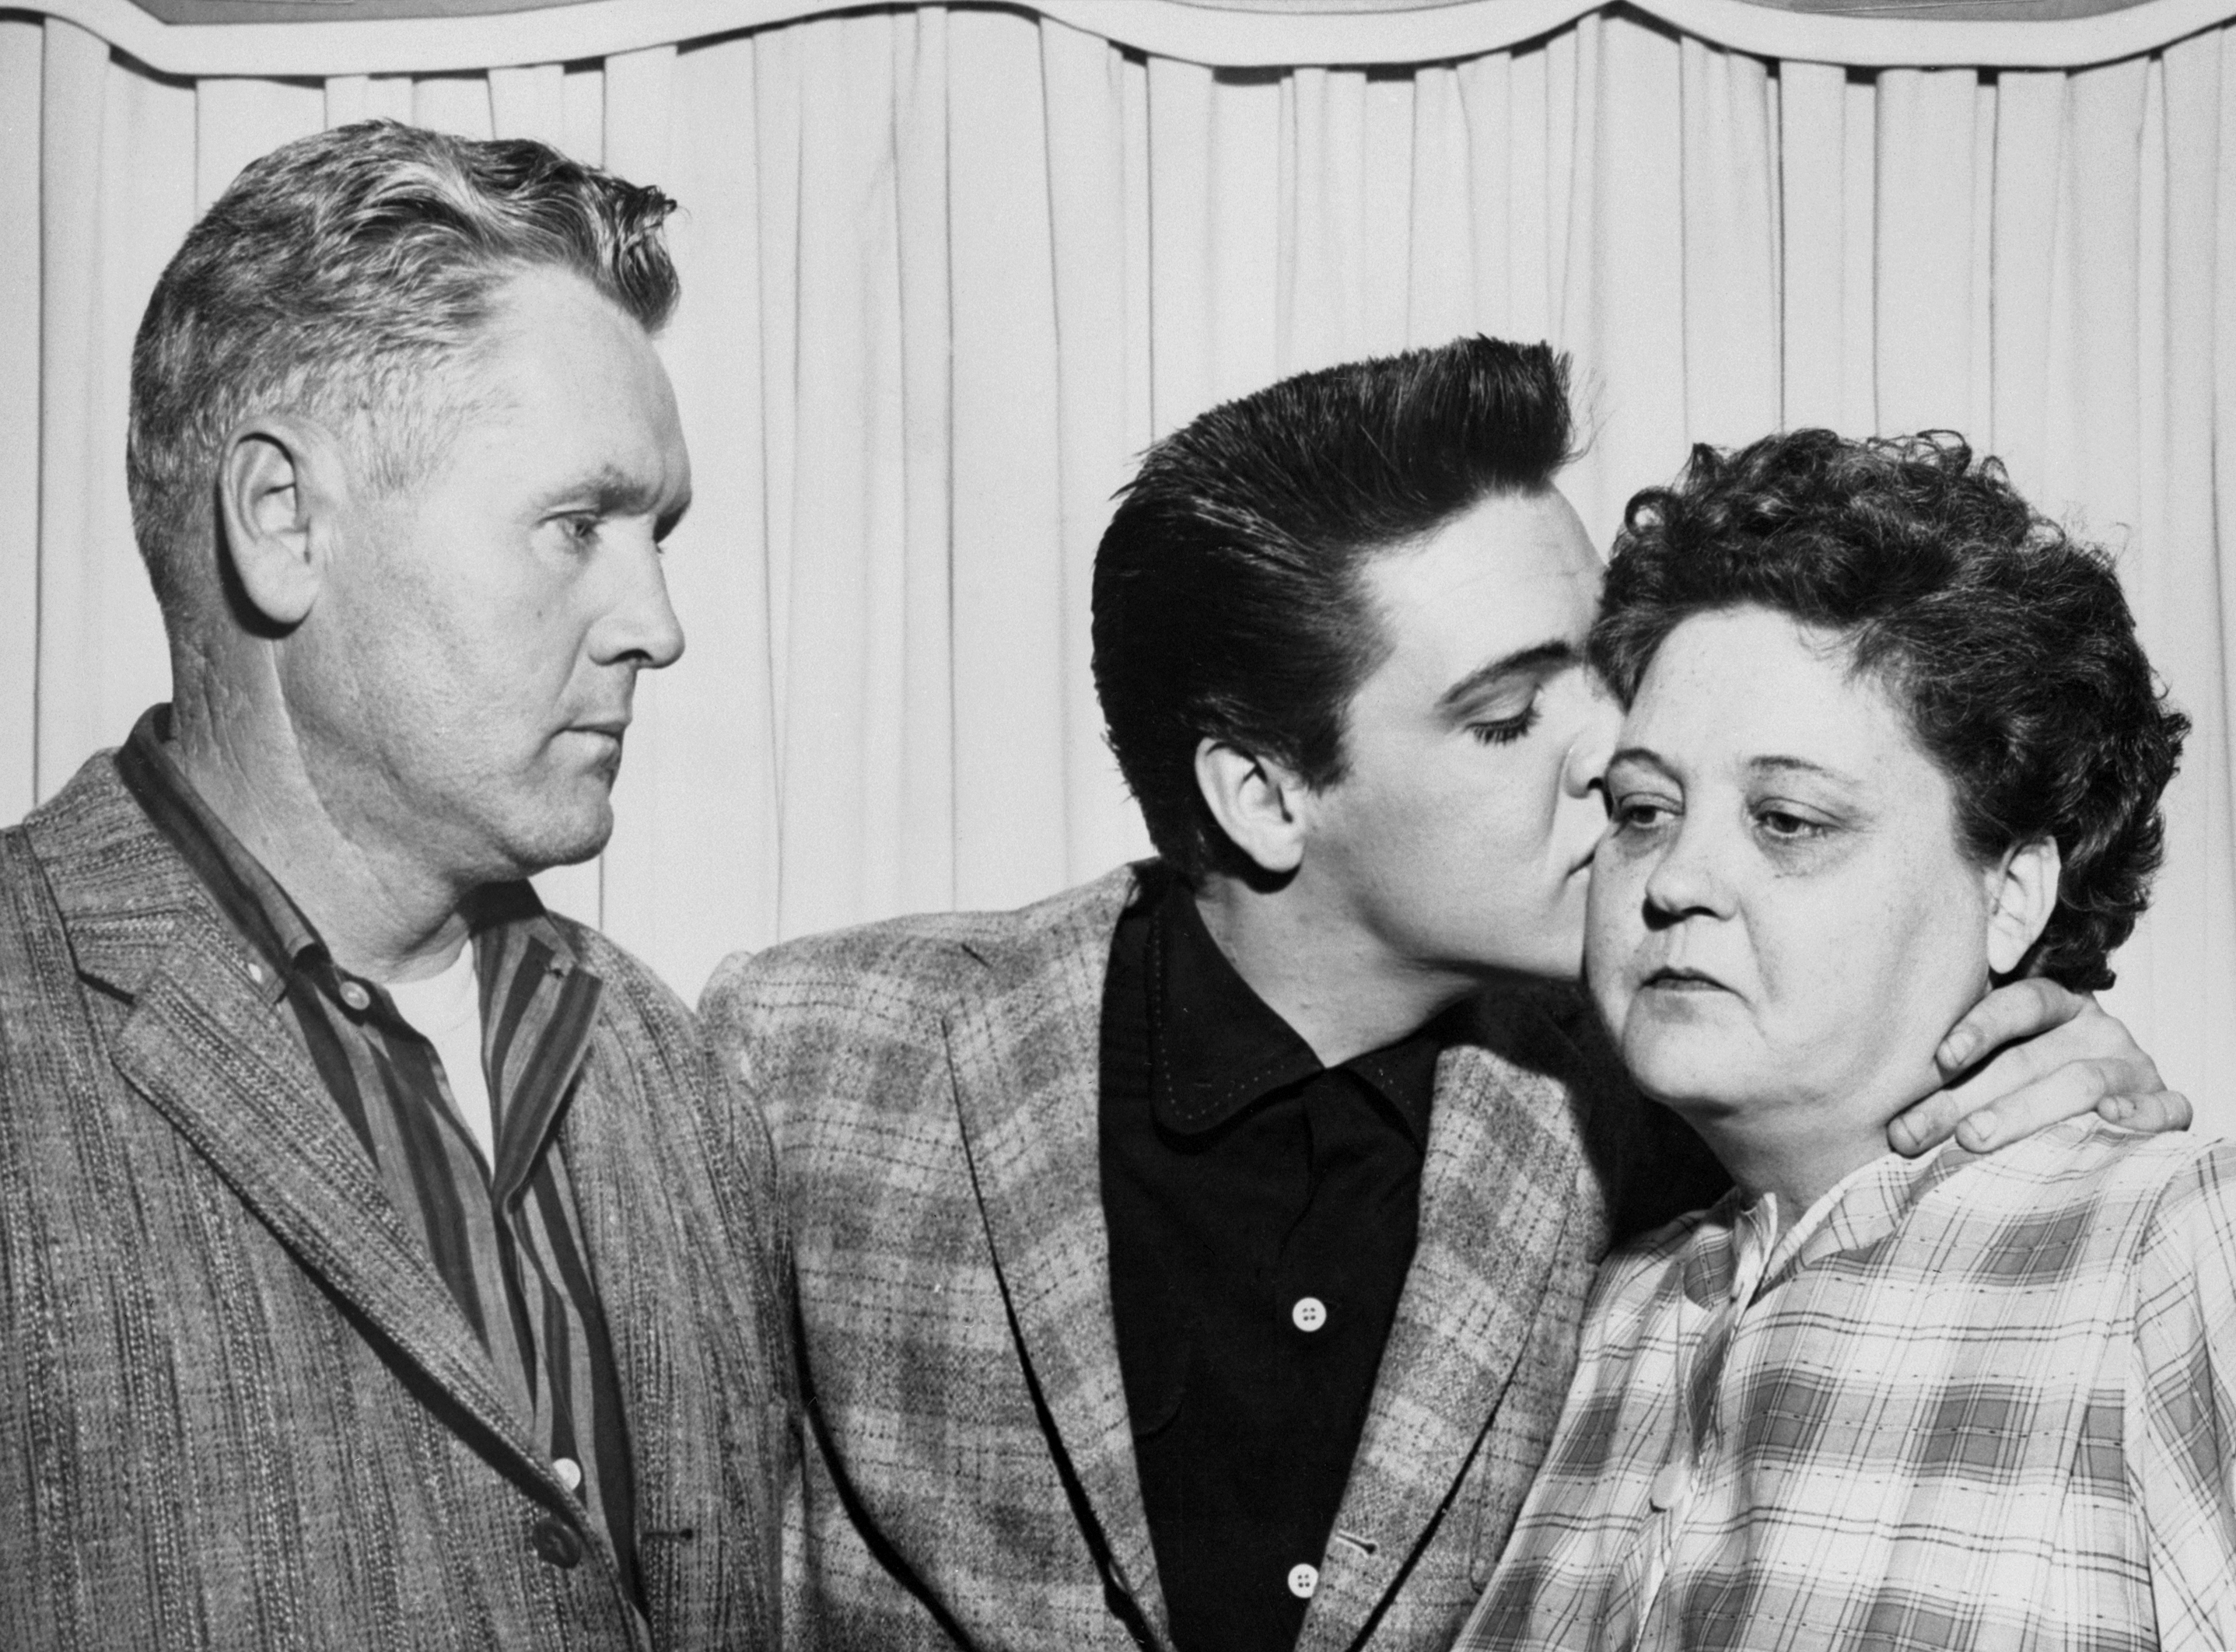 Vernon, Elvis, and Gladys Presley near a curtain